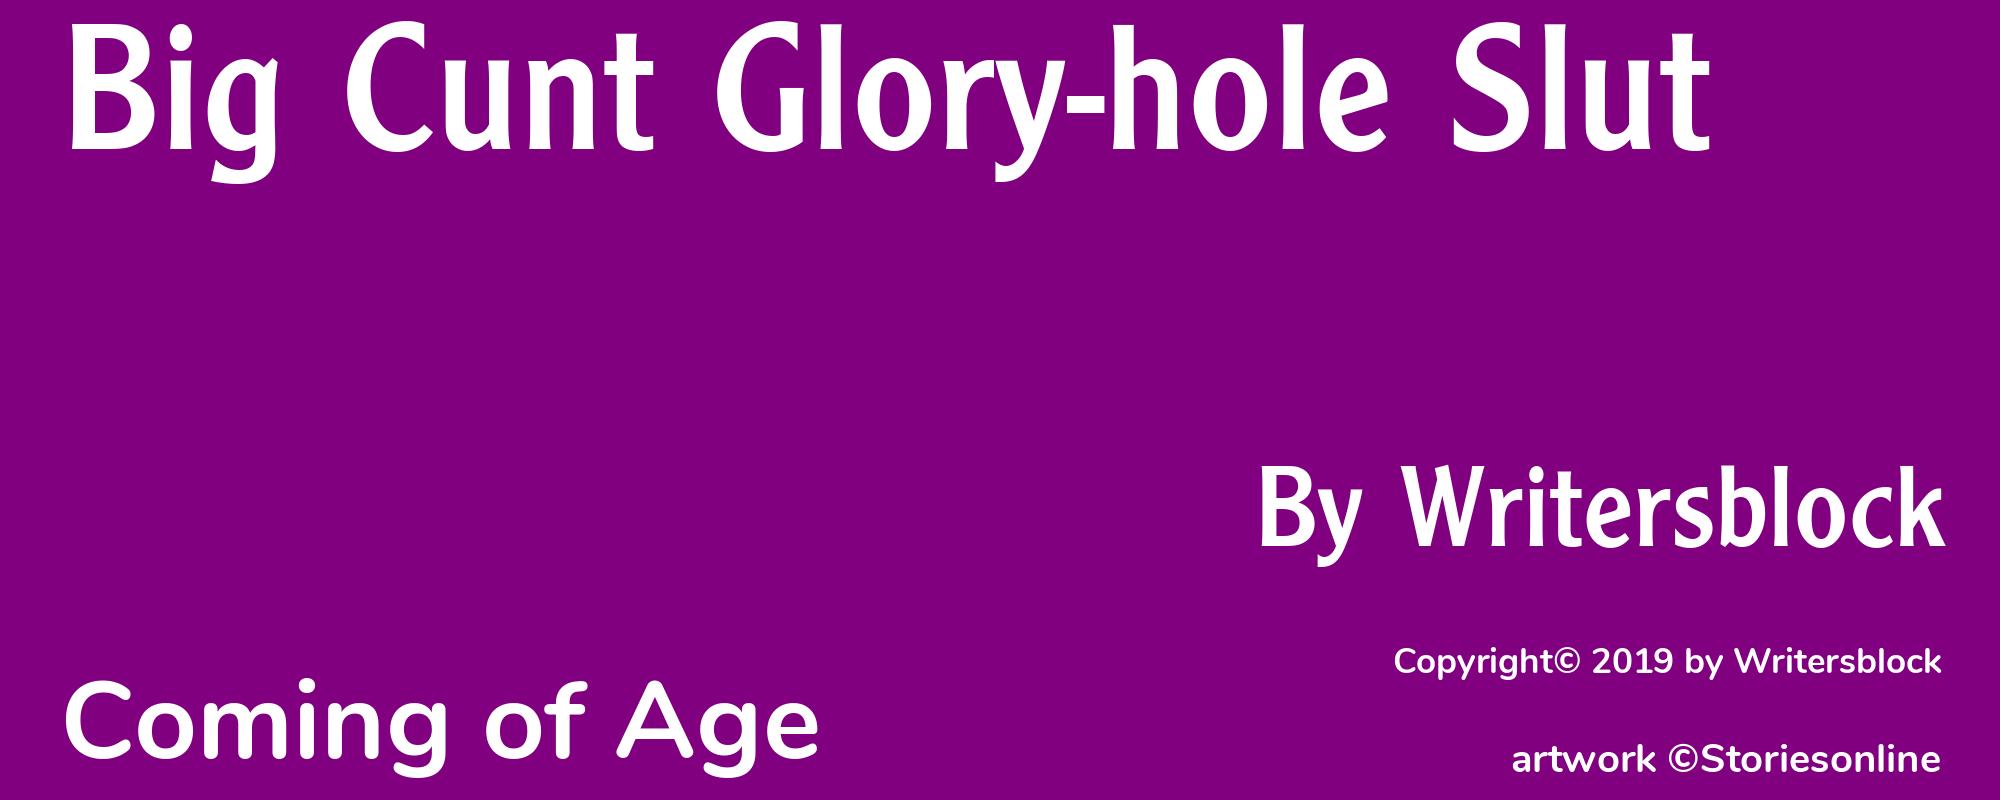 Big Cunt Glory-hole Slut - Cover